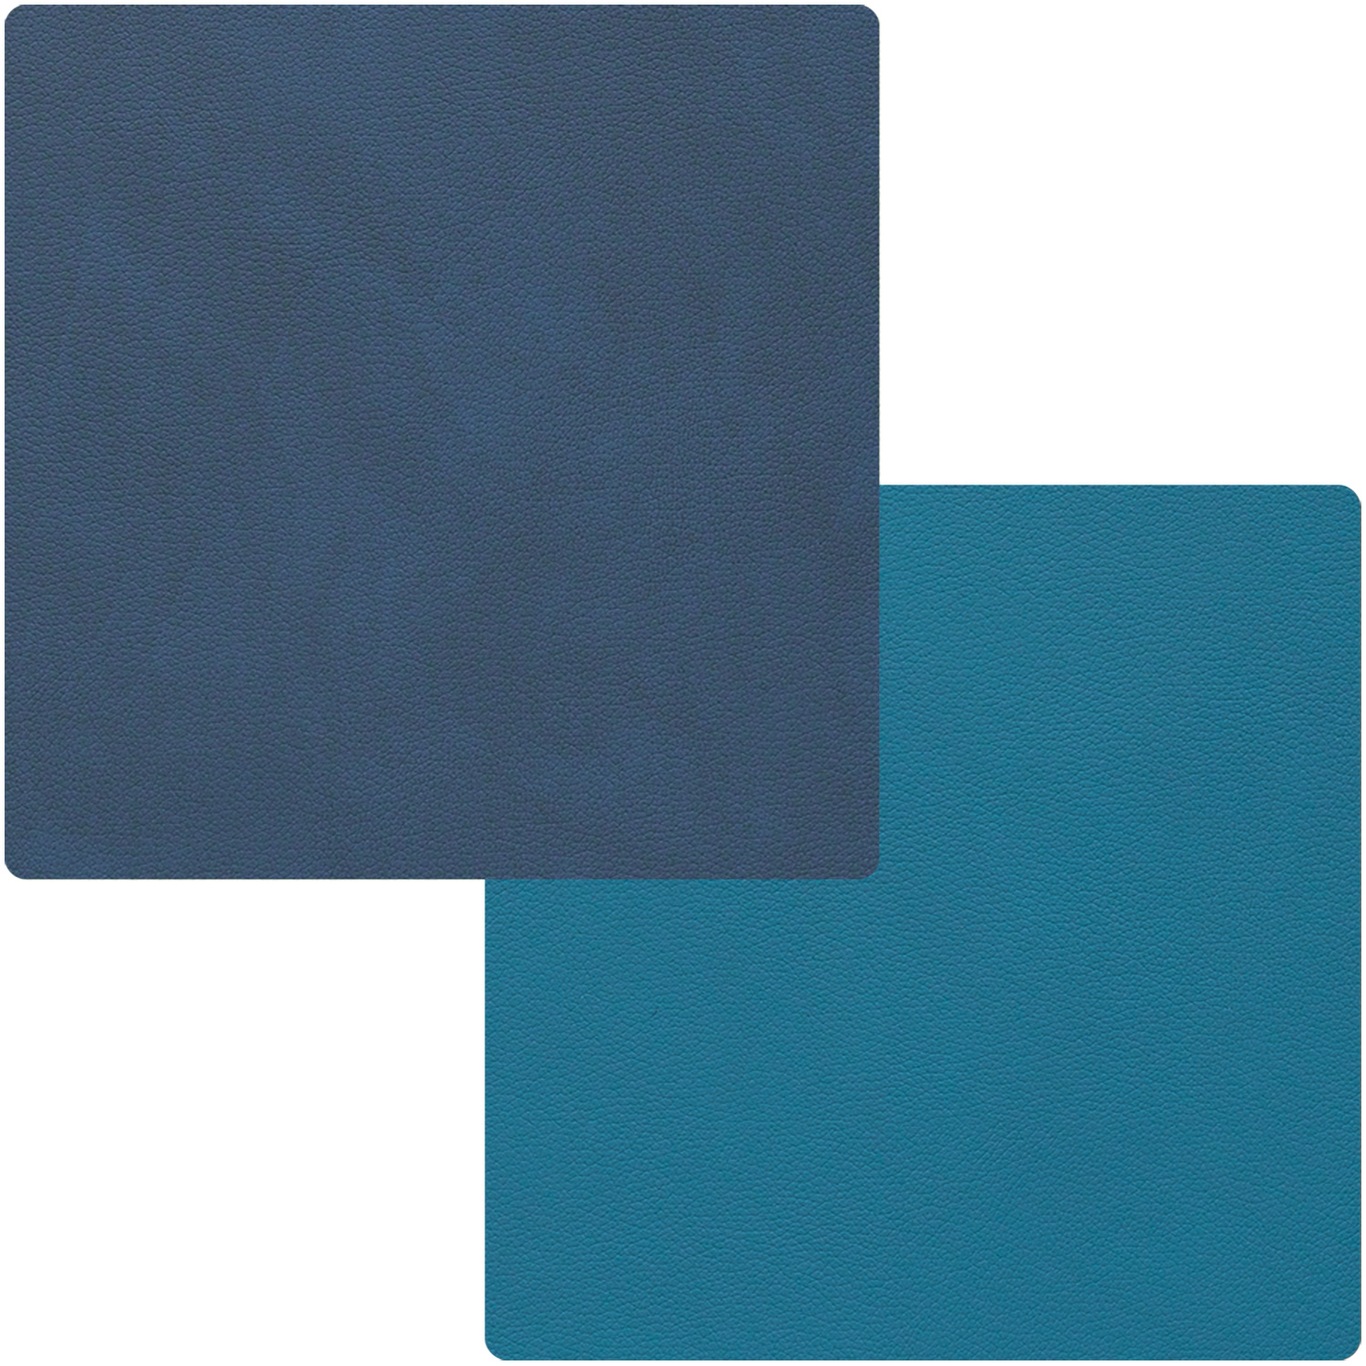 Square Vändbart Glasunderlägg 10x10 cm, Midnight Blue/Petrol